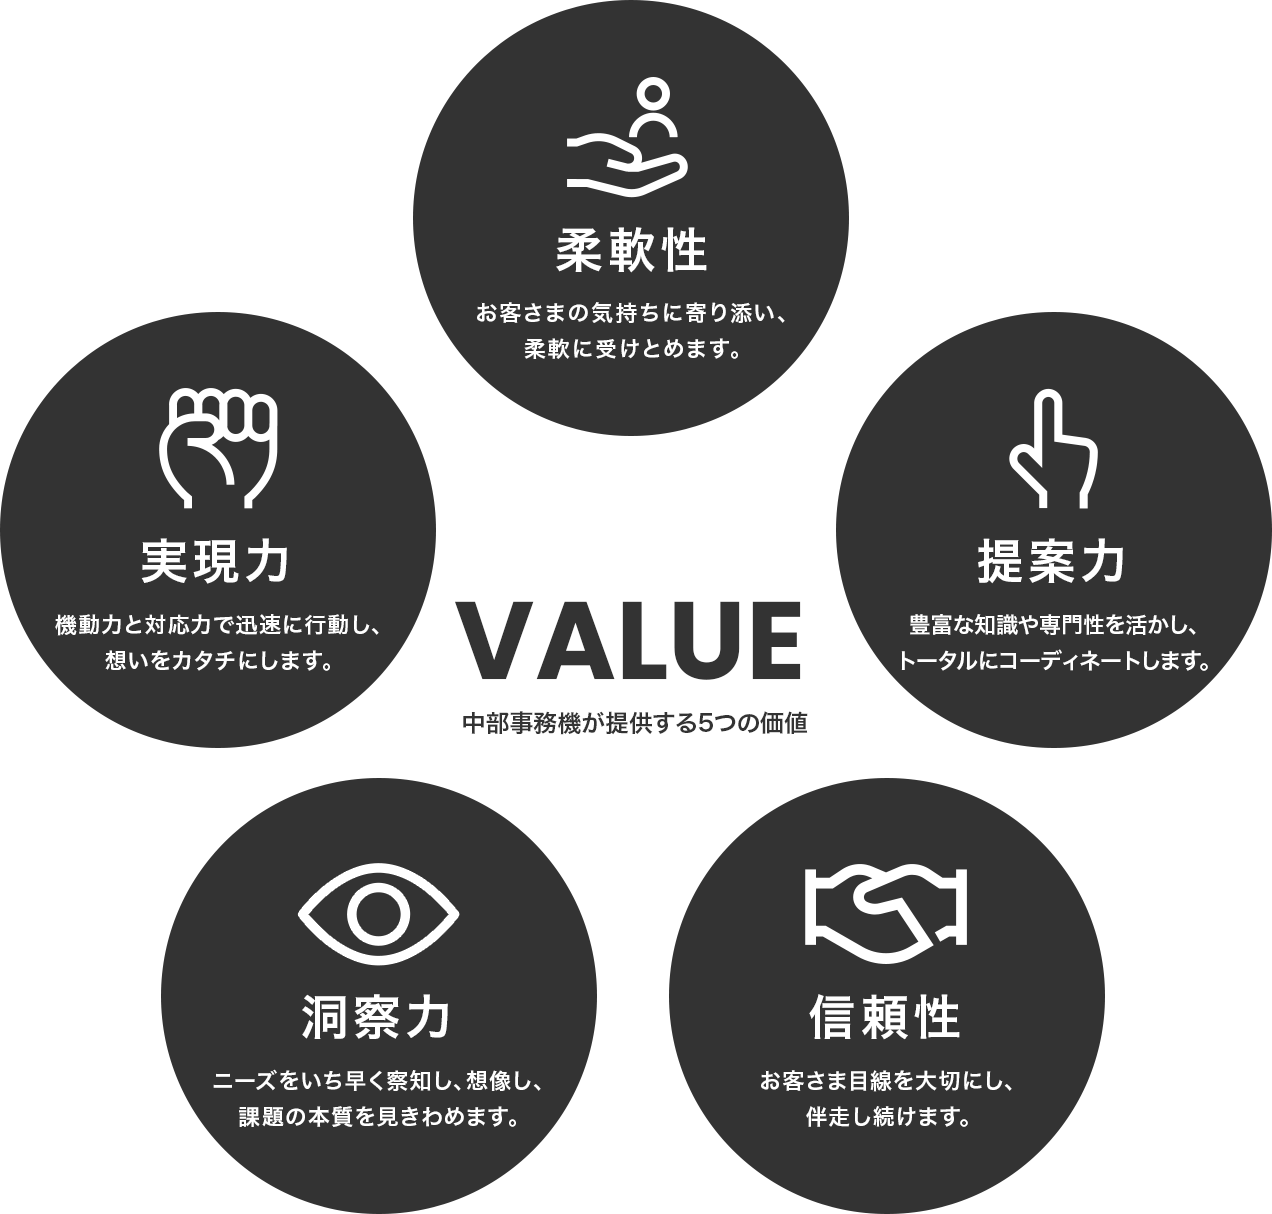 私たちが提供する５つの価値を表す図。柔軟性、提案力、信頼性、洞察力、実現力の５つが書かれています。